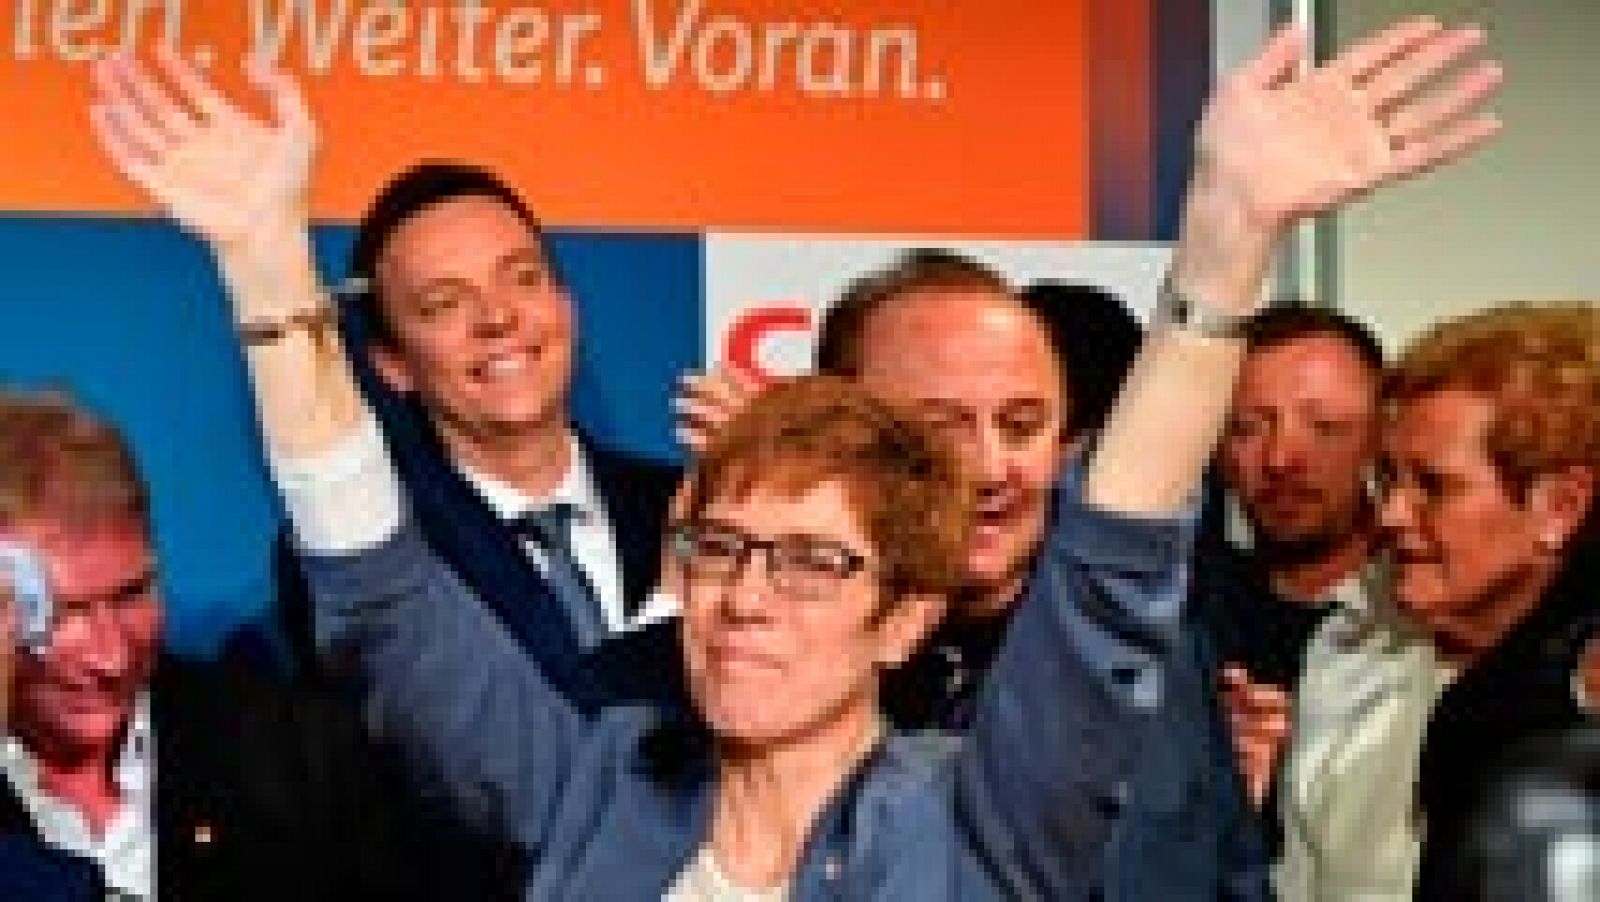 Alemania - La CDU de Merkel gana las regionales del Sarre y defiende su posición frente a Schulz